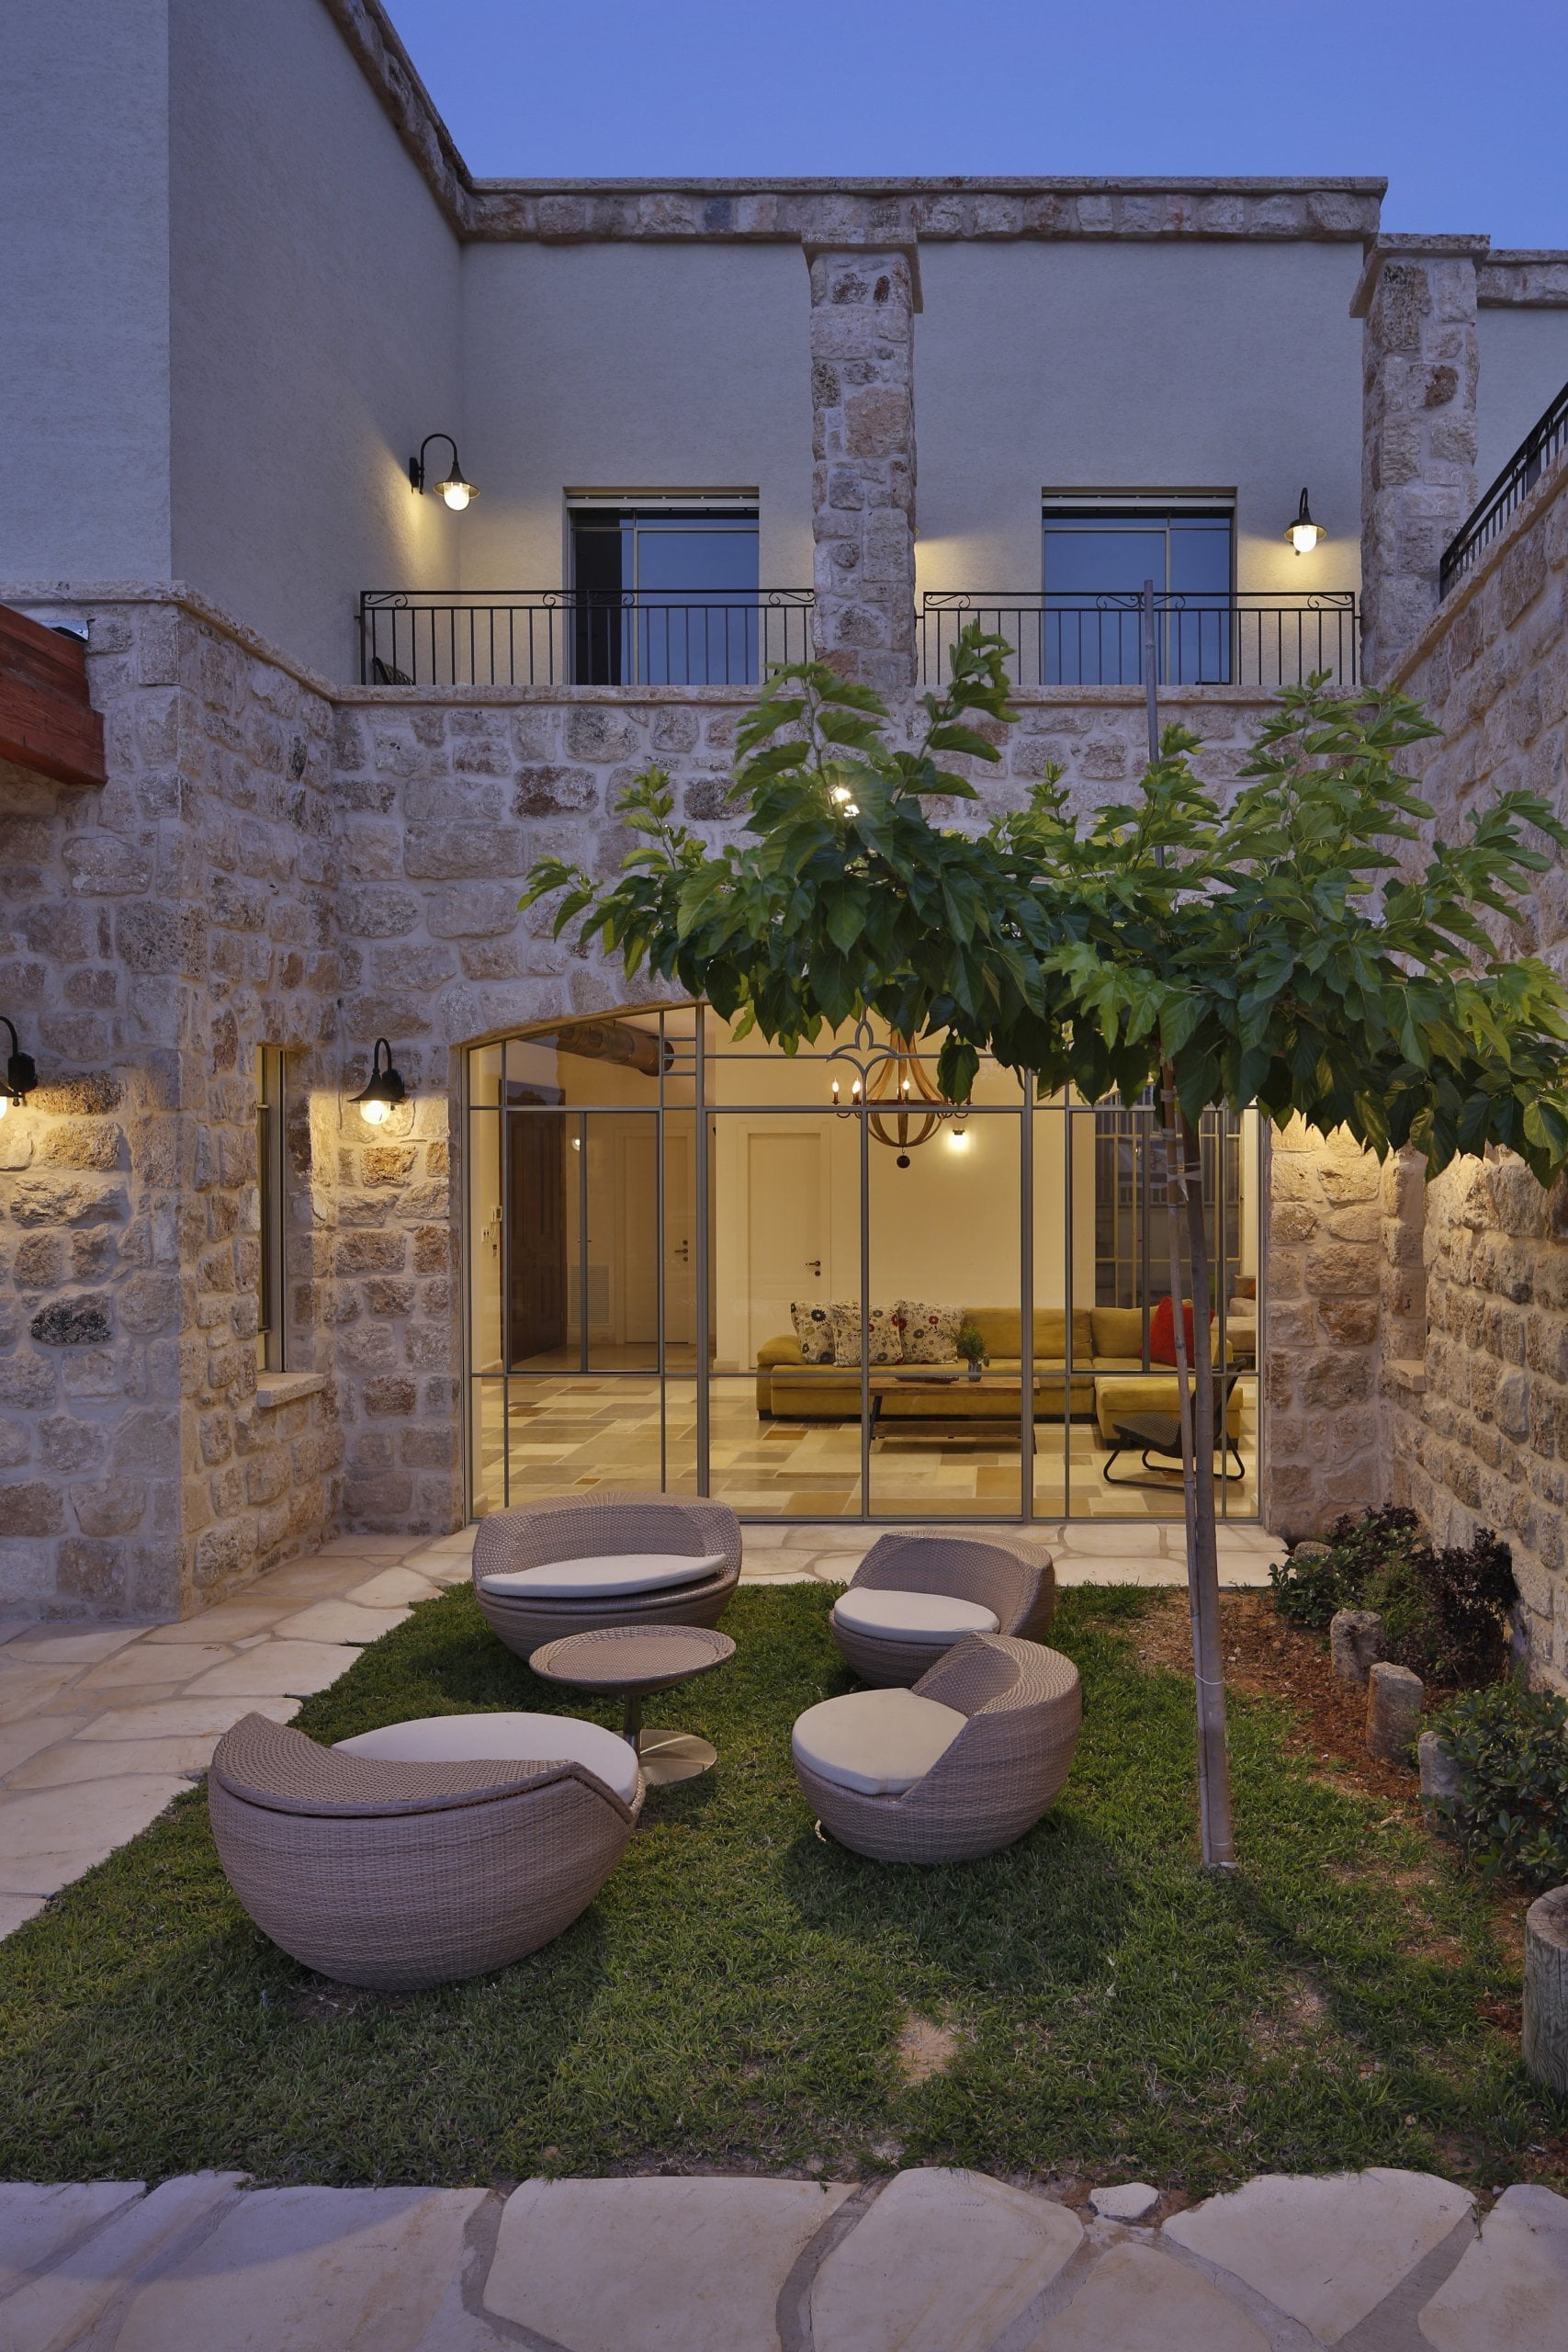 תכנון ועיצוב ברמה גבוהה לחצר בית פרטי בסגנון ירושלמי